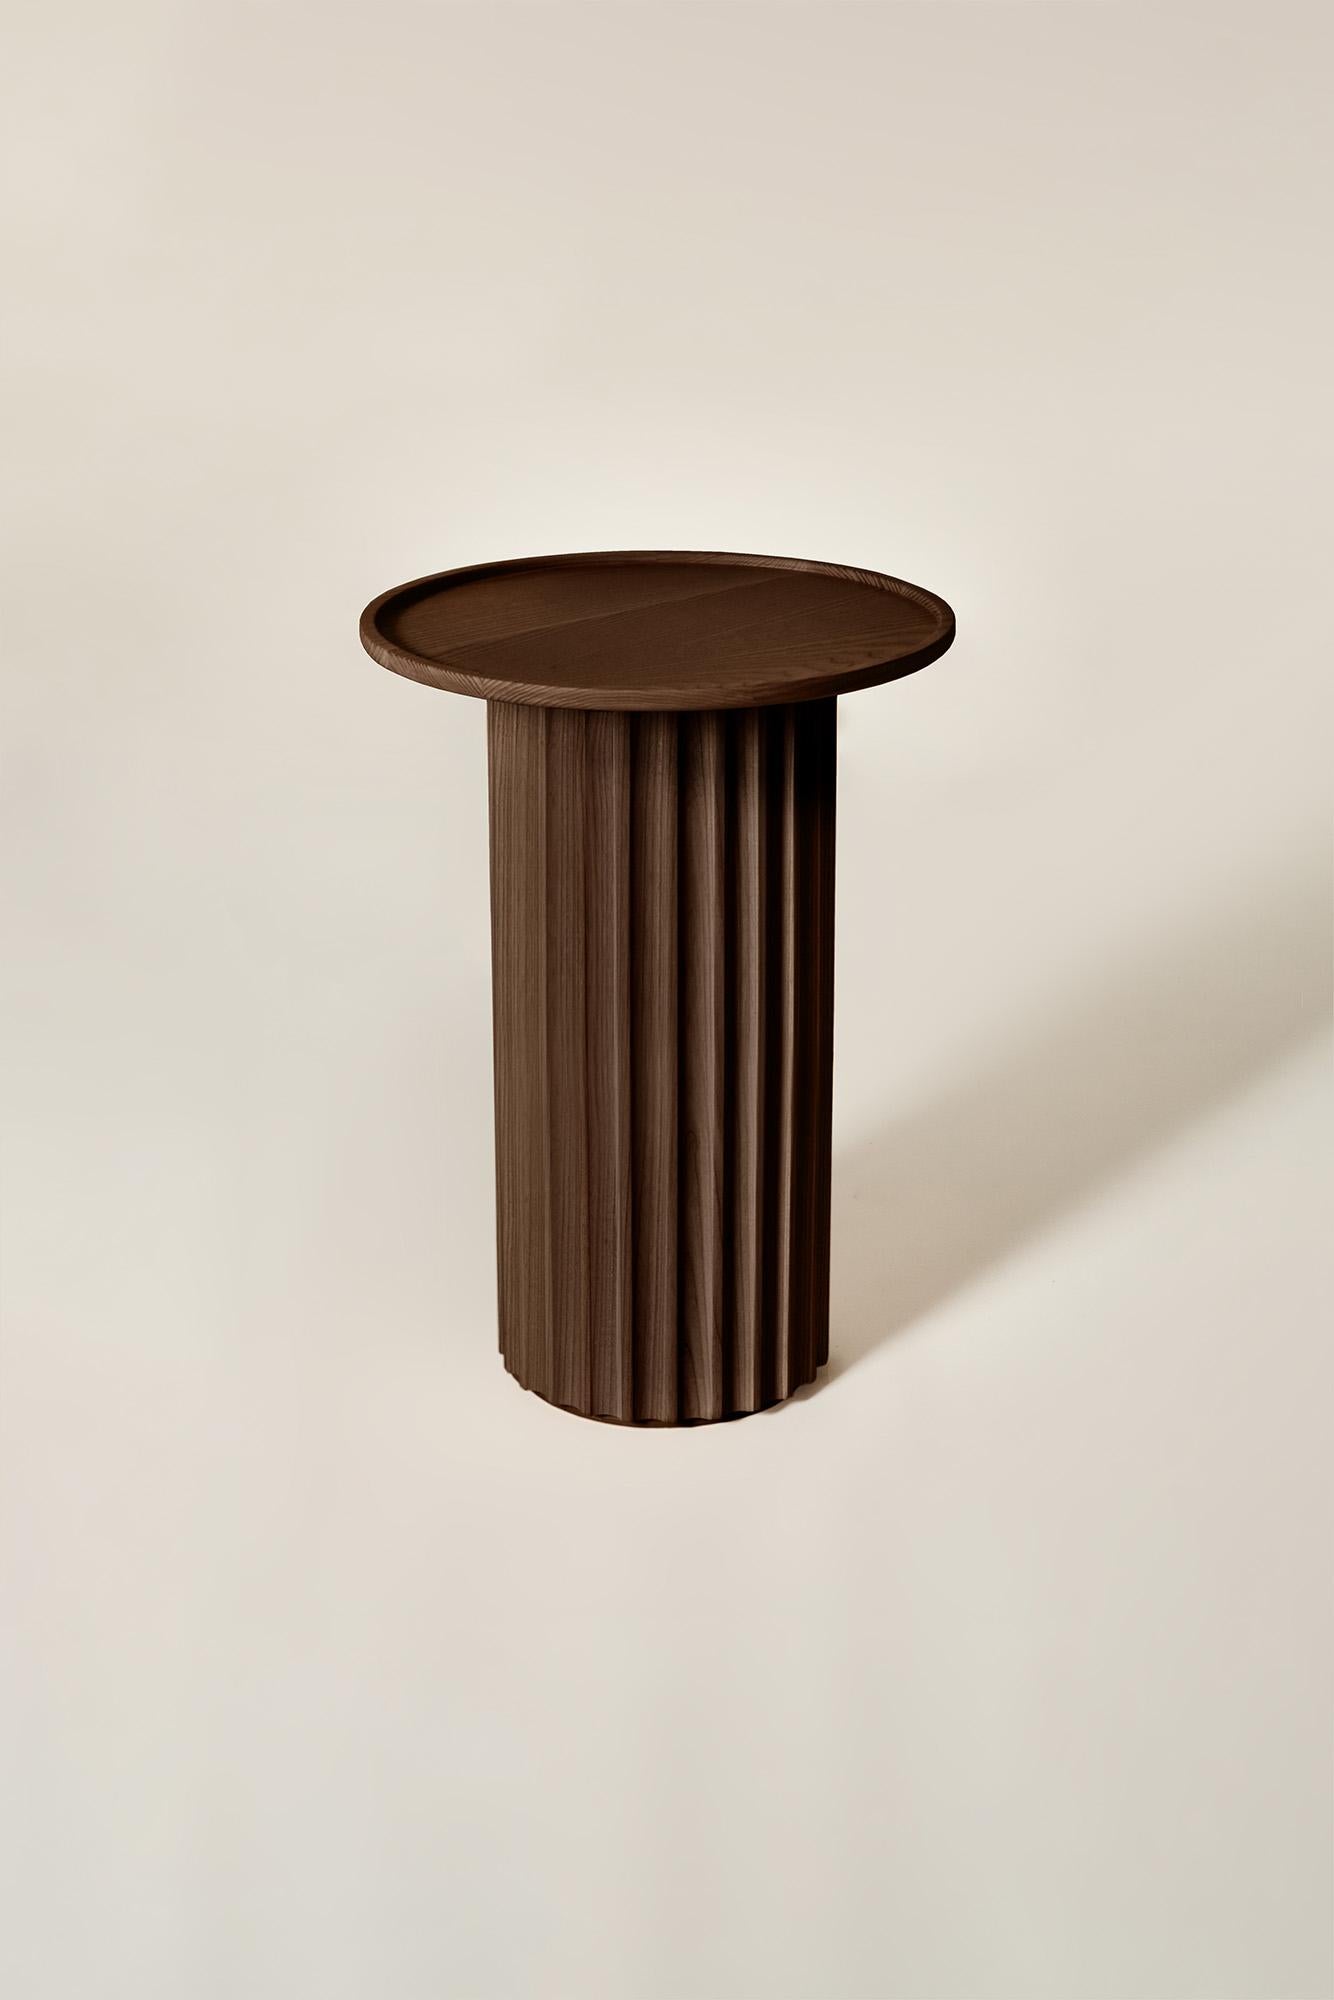 Capitello Solid Wood Coffee Table, Ash in Brown Finish, Contemporary In New Condition For Sale In Cadeglioppi de Oppeano, VR